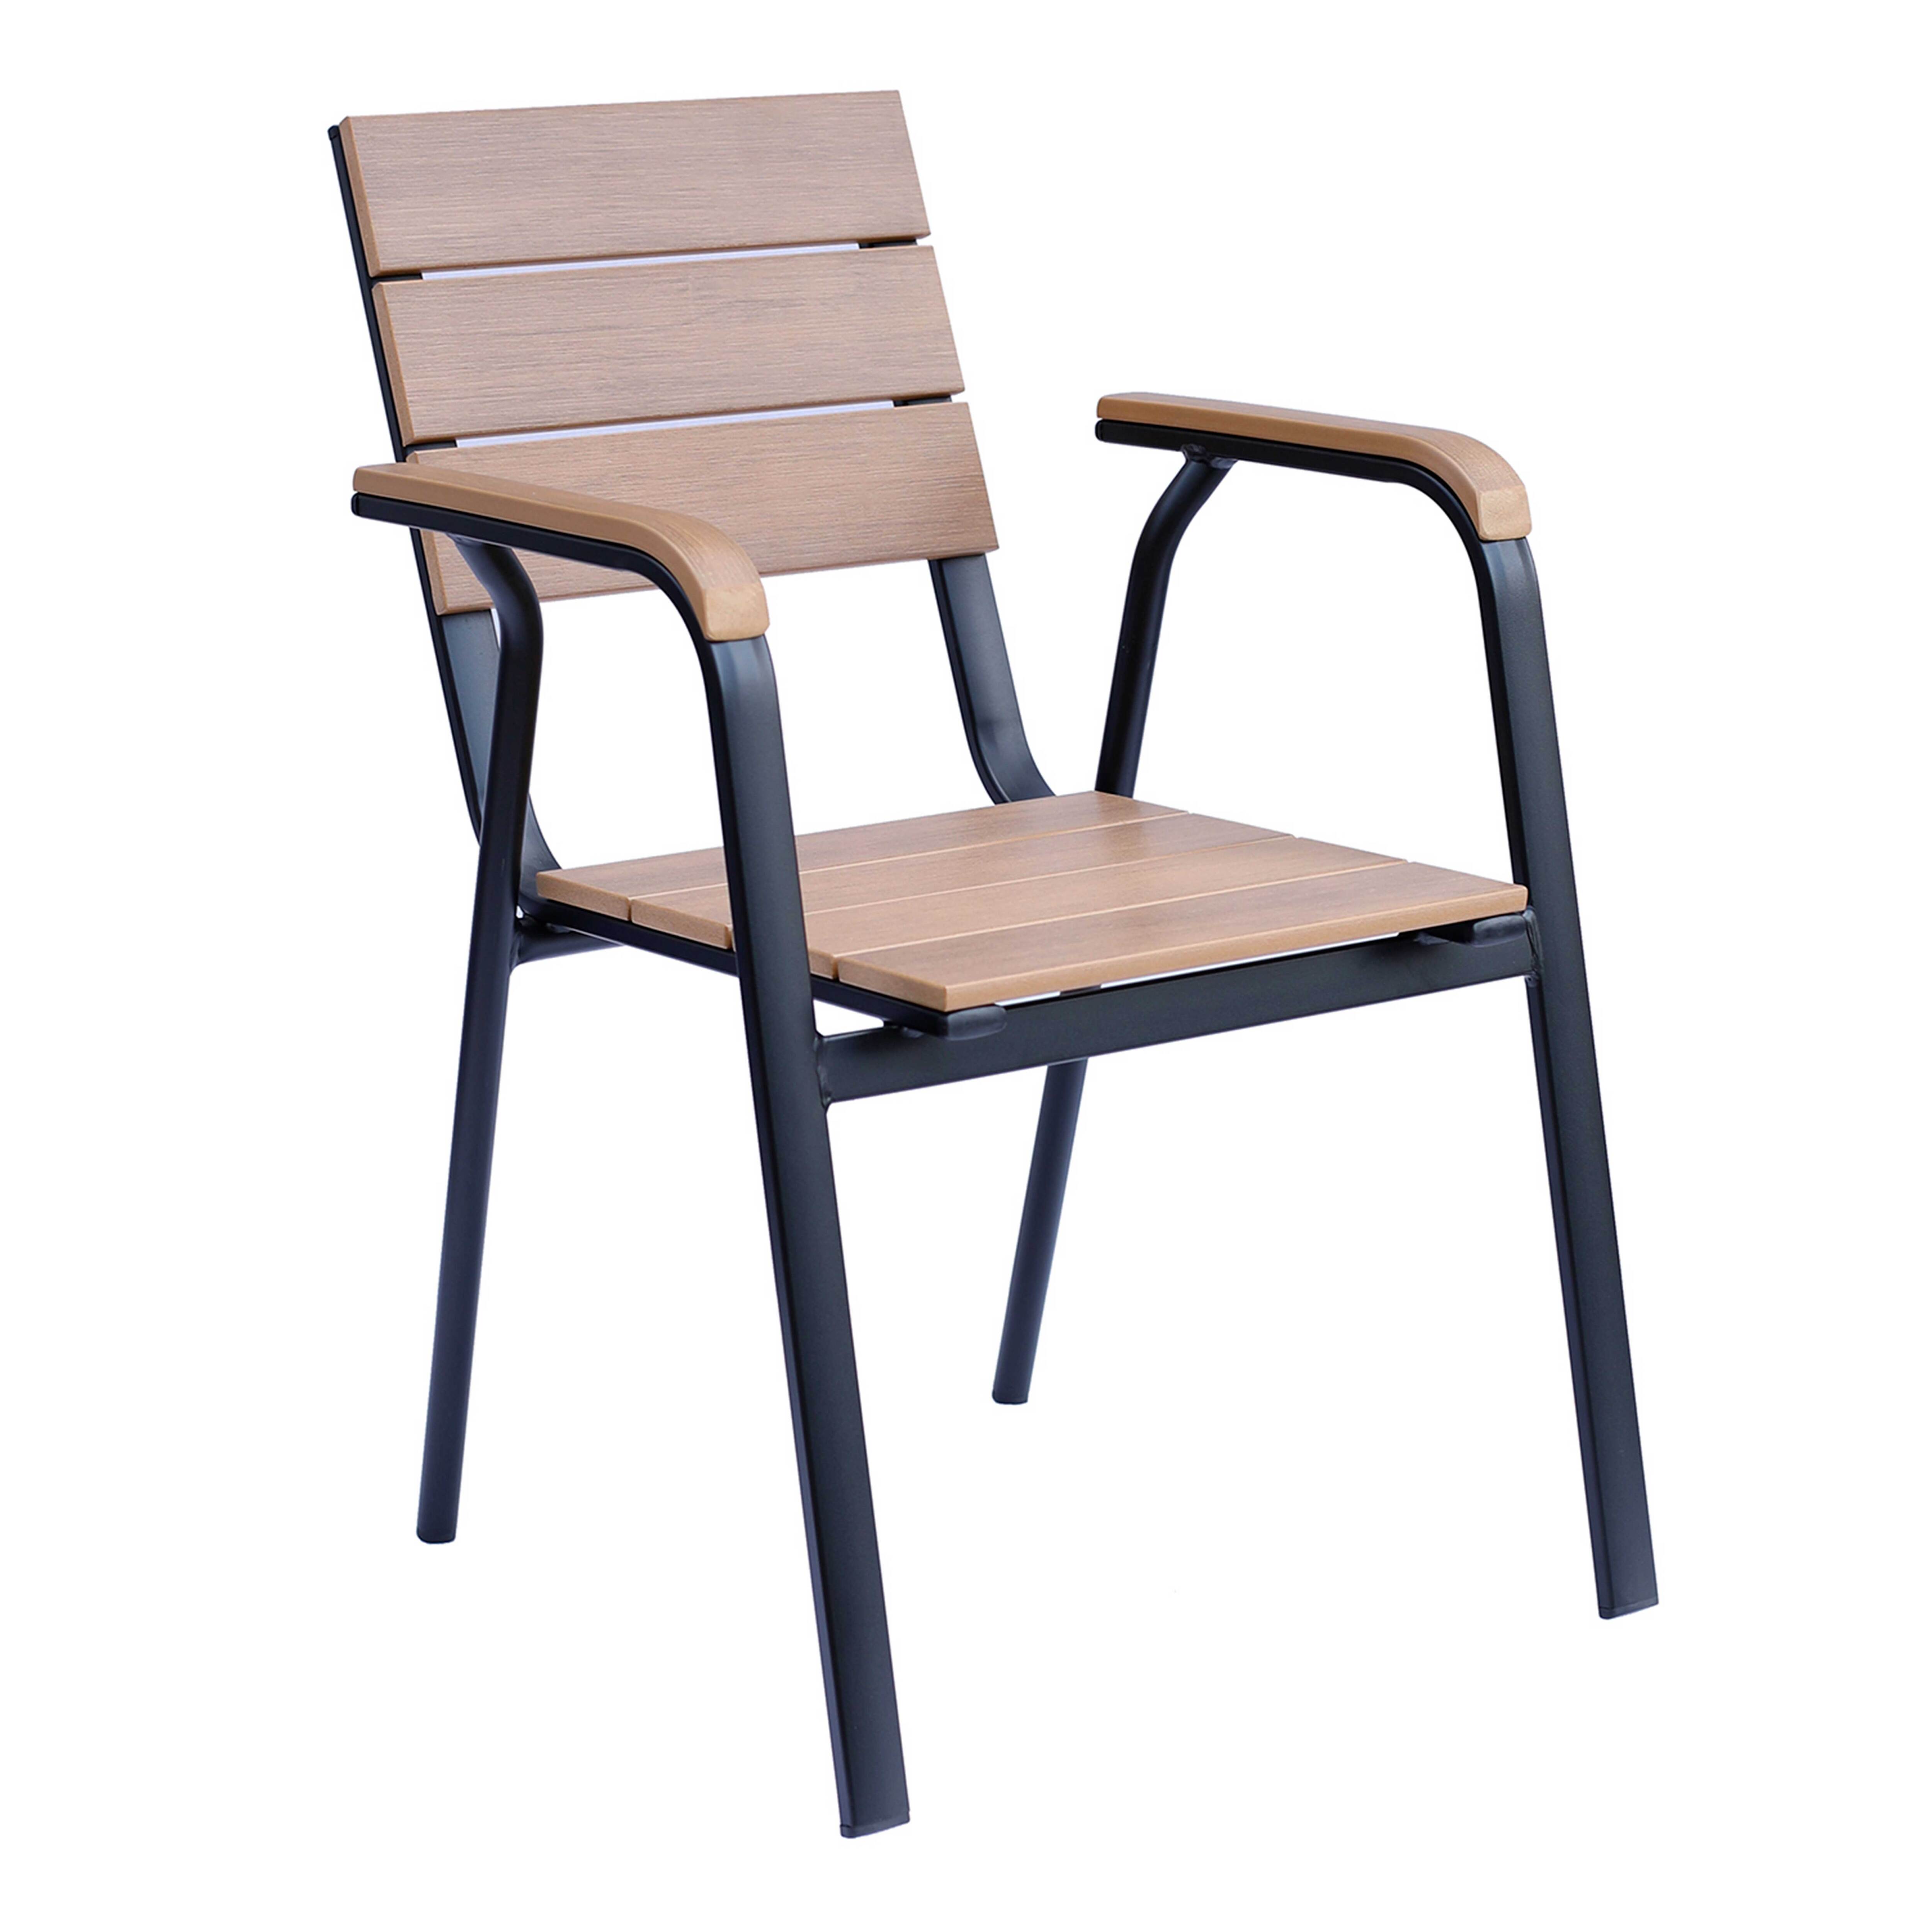 chaise de jardin en aluminium et polywood